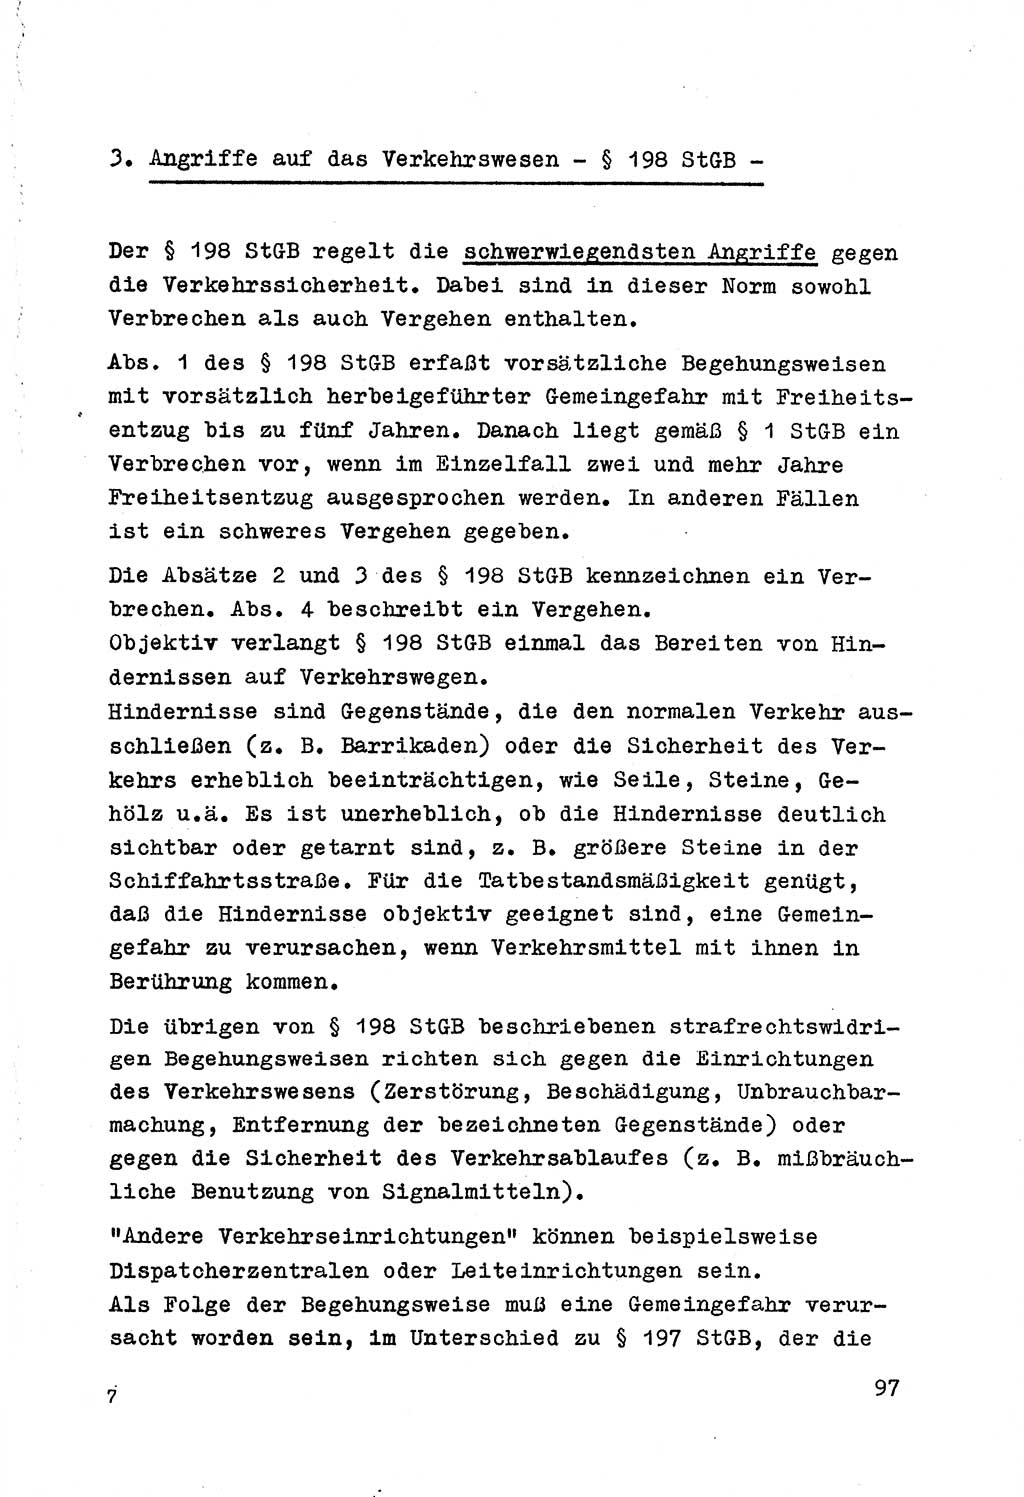 Strafrecht der DDR (Deutsche Demokratische Republik), Besonderer Teil, Lehrmaterial, Heft 7 1970, Seite 97 (Strafr. DDR BT Lehrmat. H. 7 1970, S. 97)